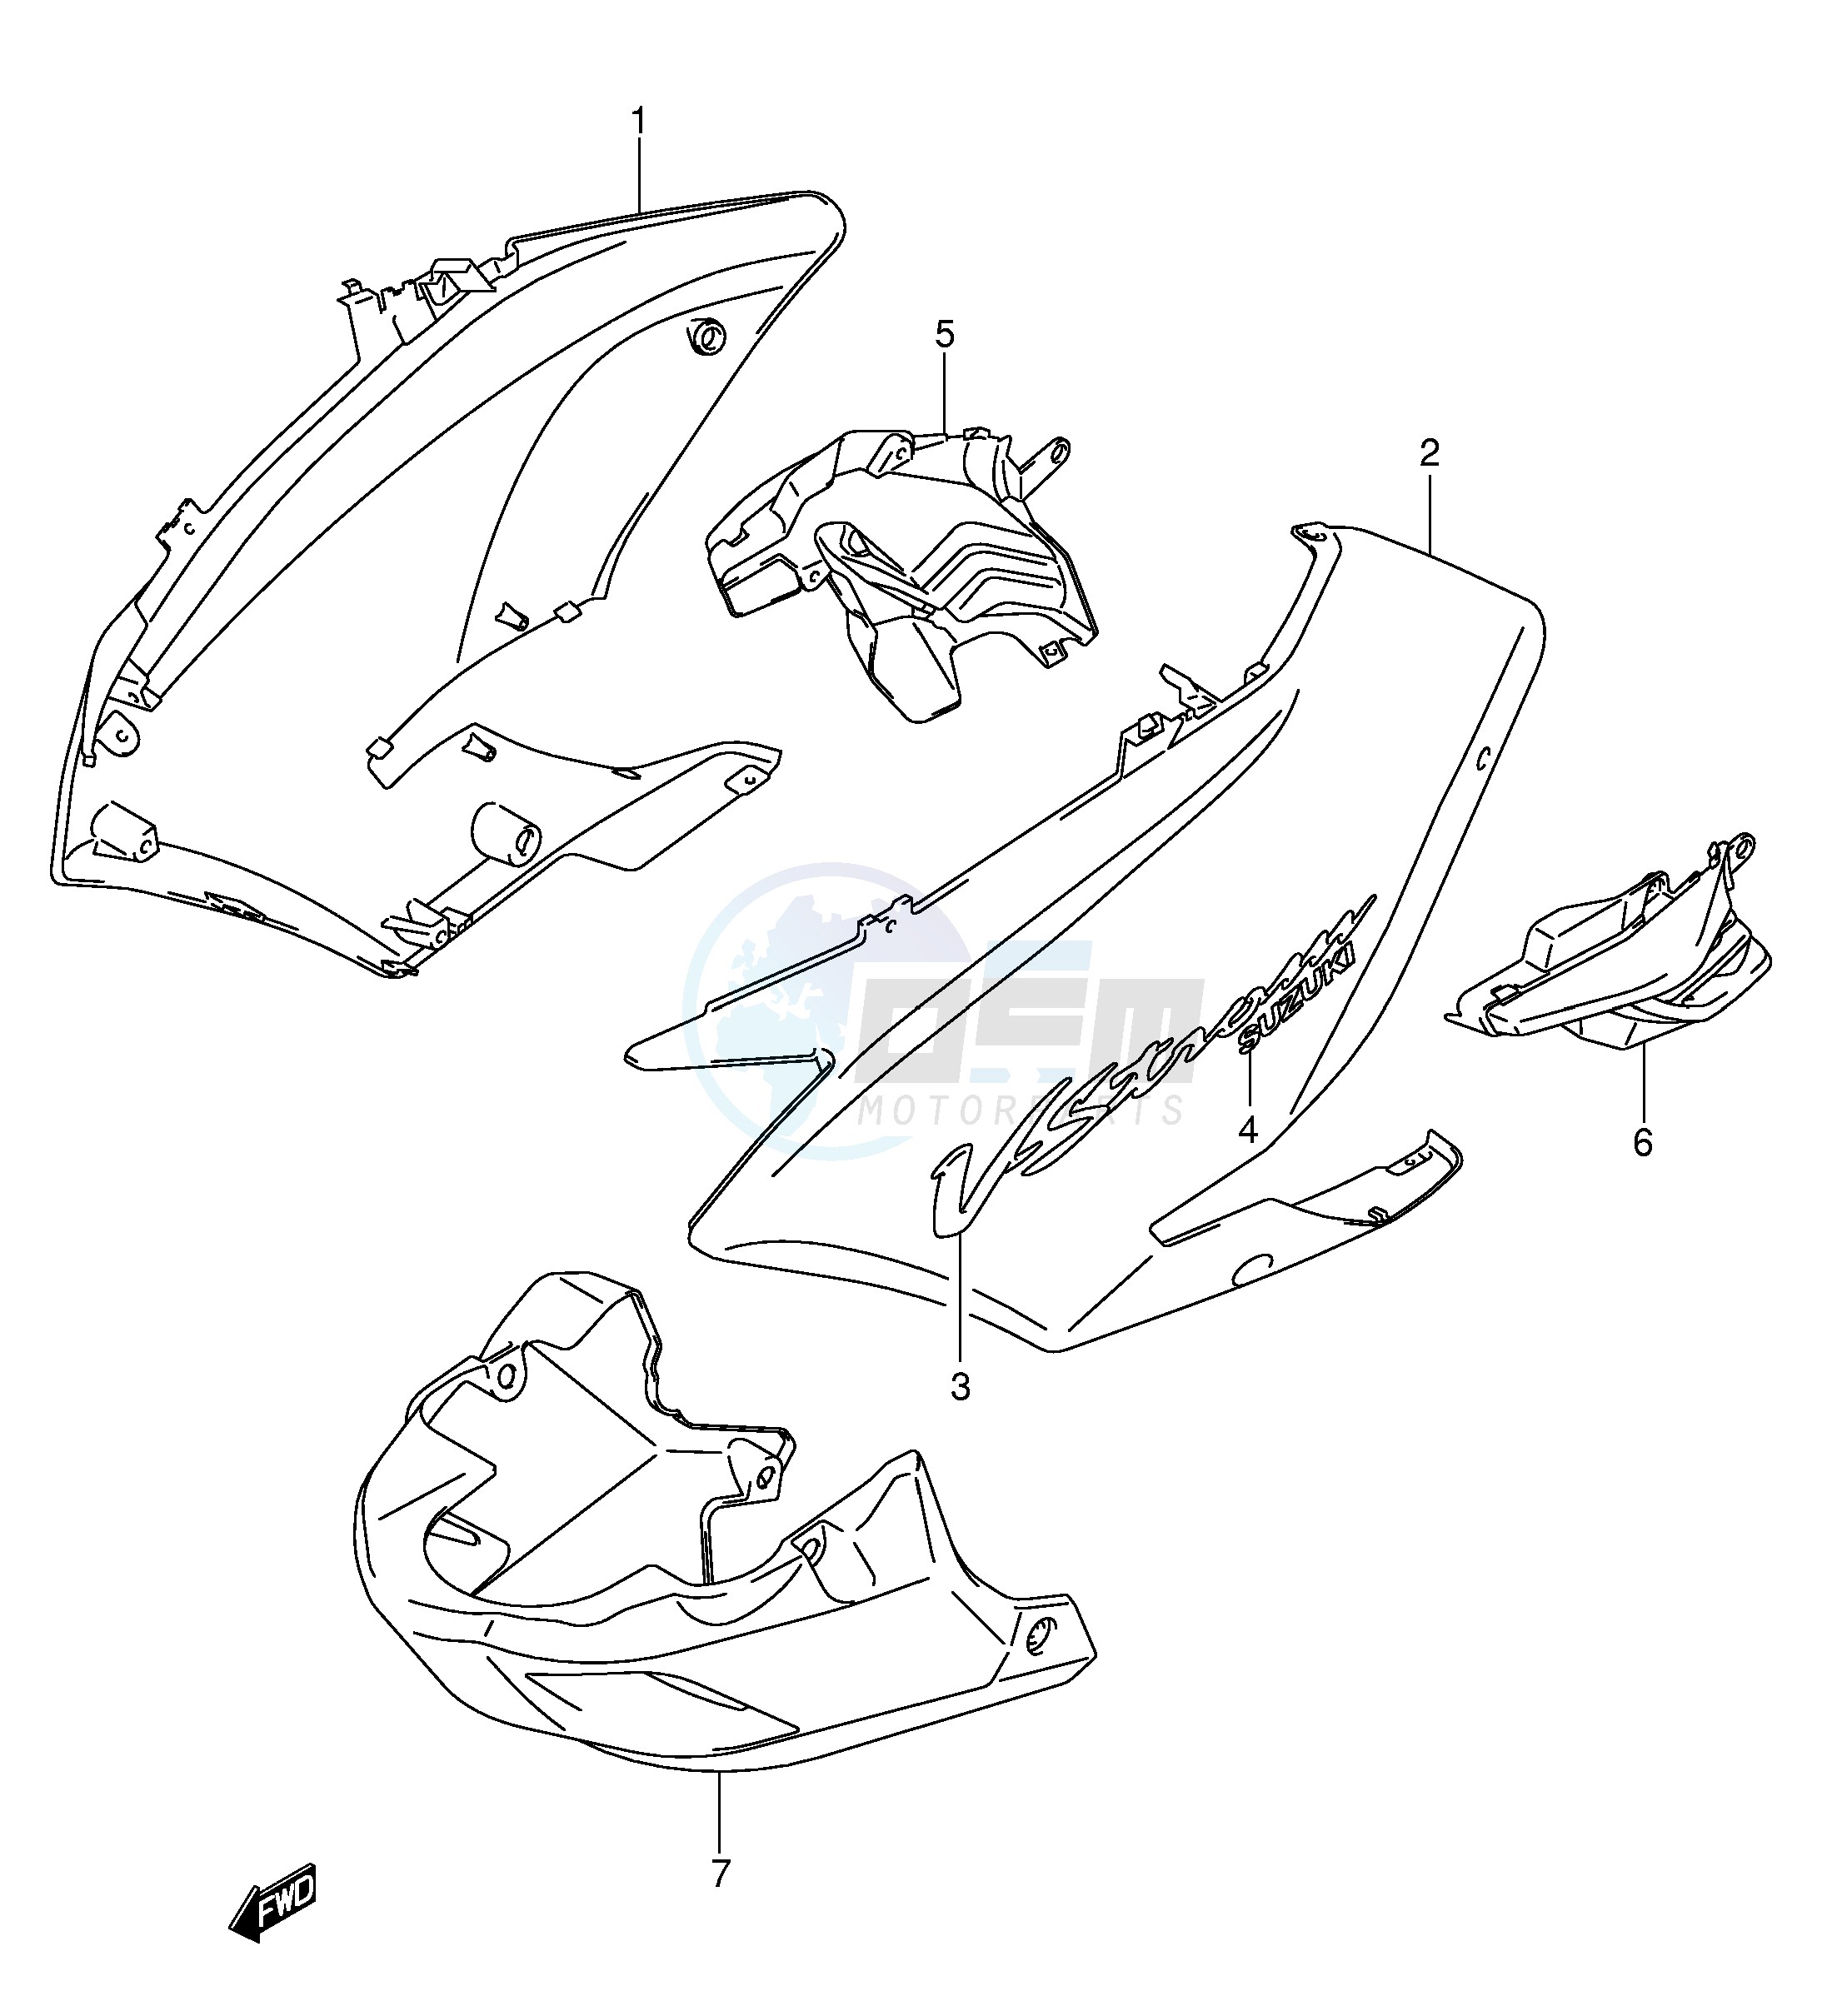 SIDE COWLING (MODEL K3) blueprint